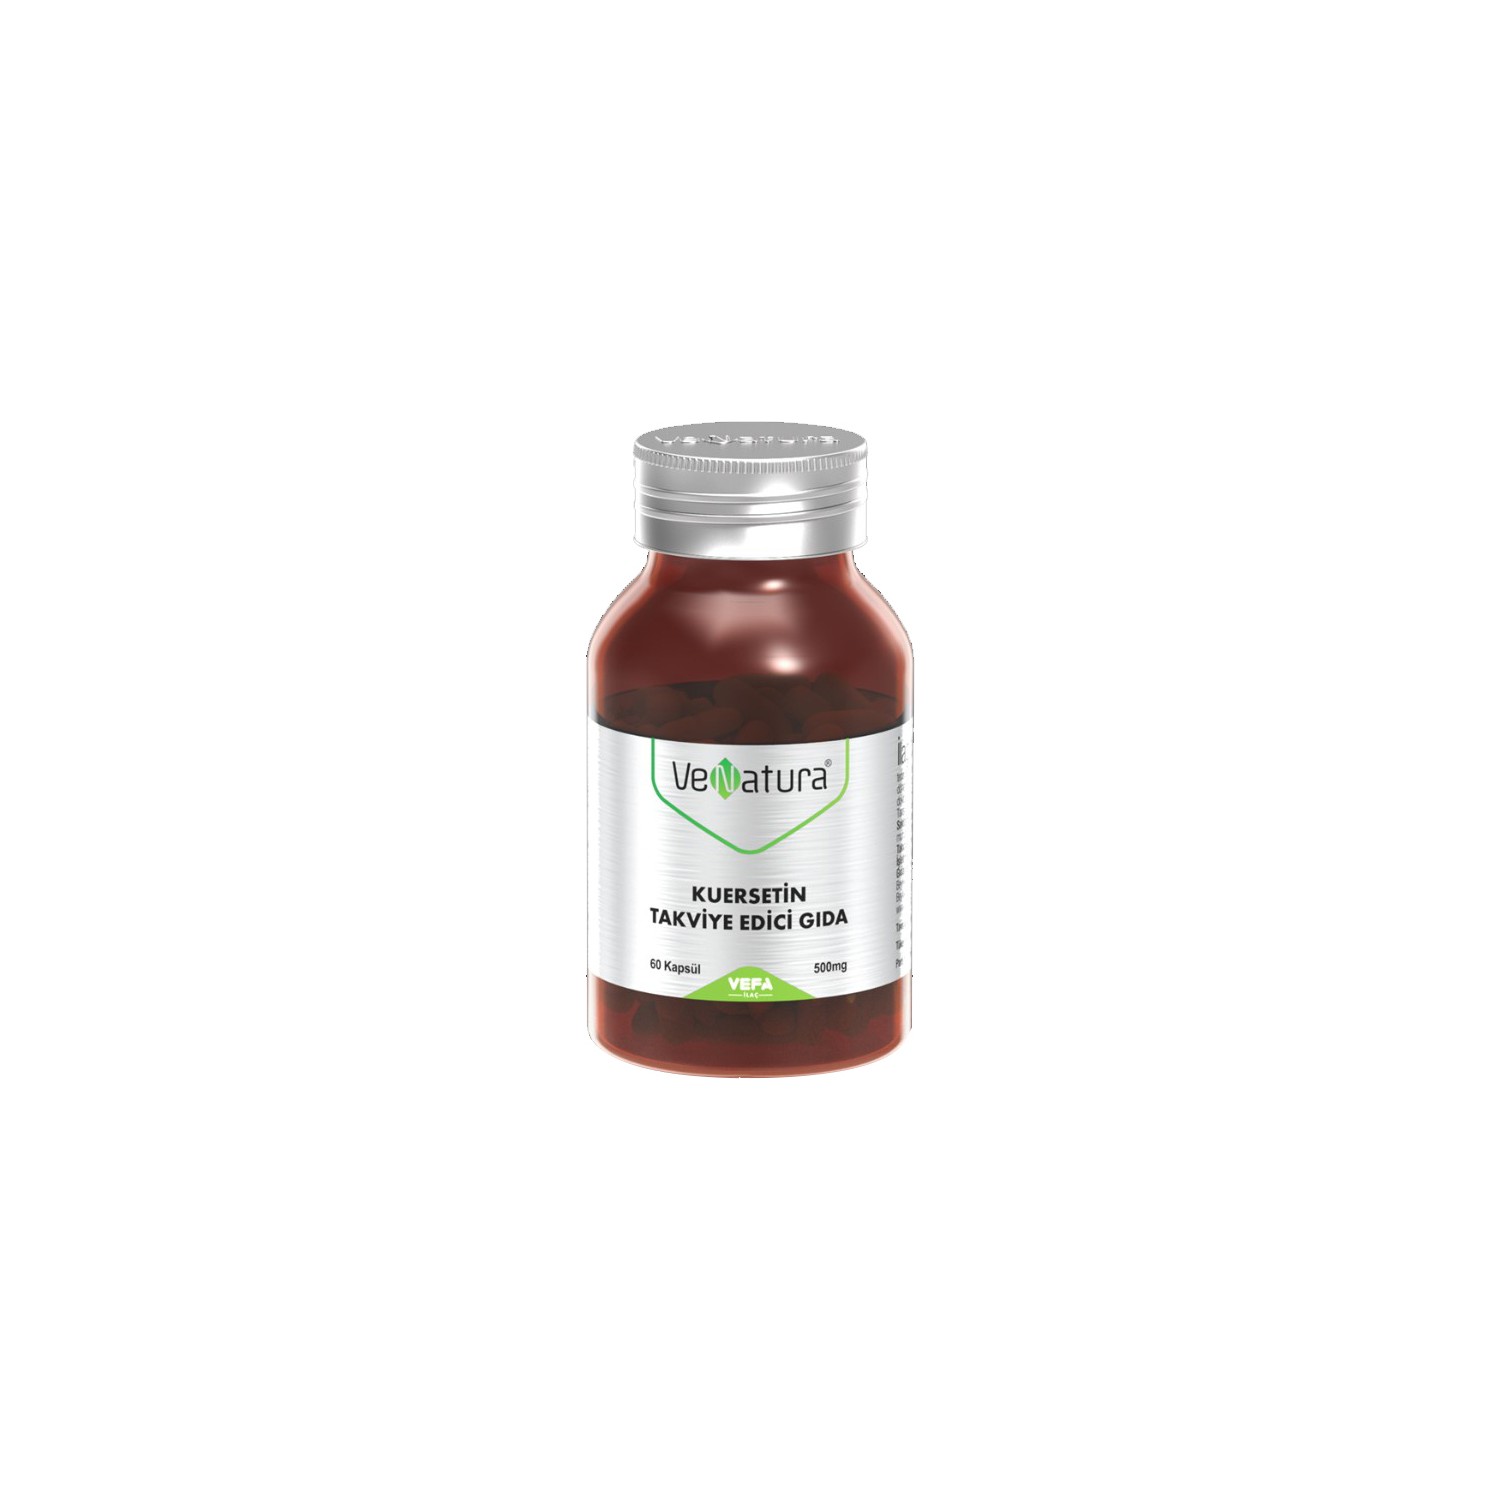 Кверцетин Venatura, 500 мг, 60 капсул premium blend soy isoflavones 100 mg 60 vegan capsules